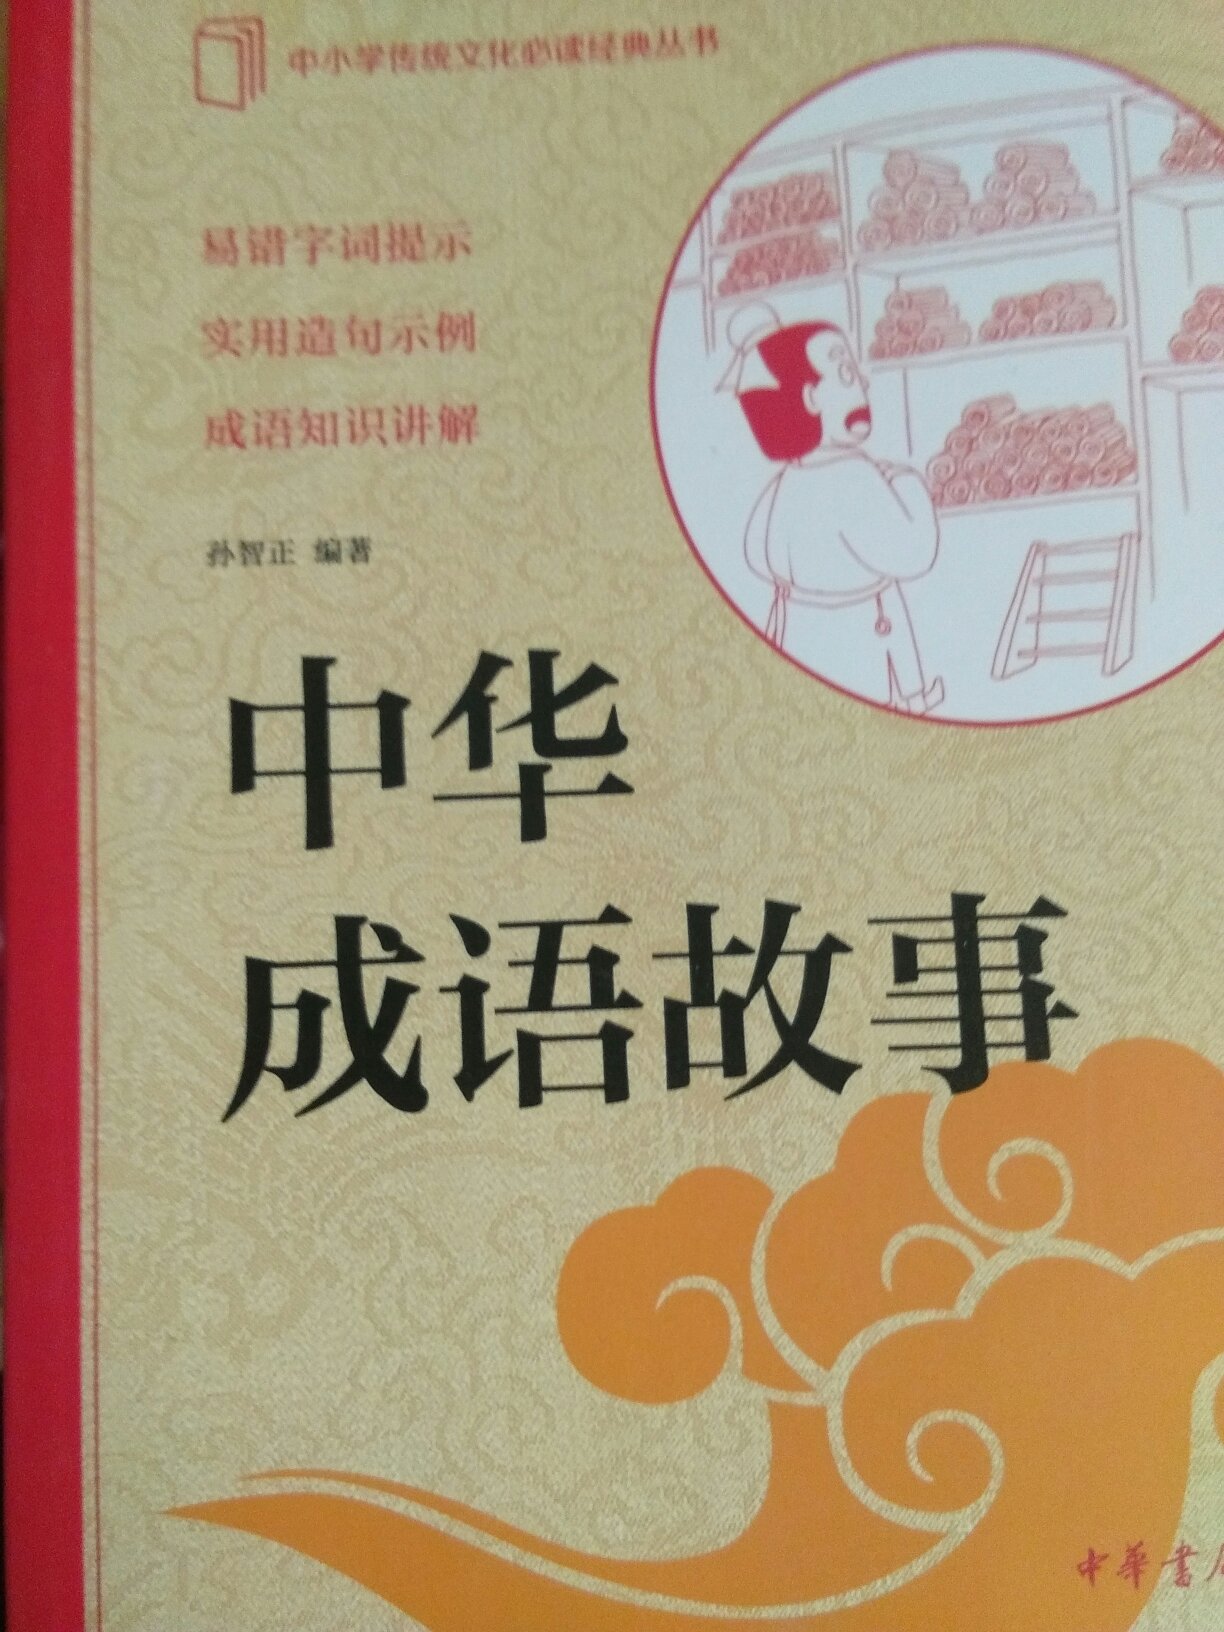 凑单，相信中华书局的书质量不会差！